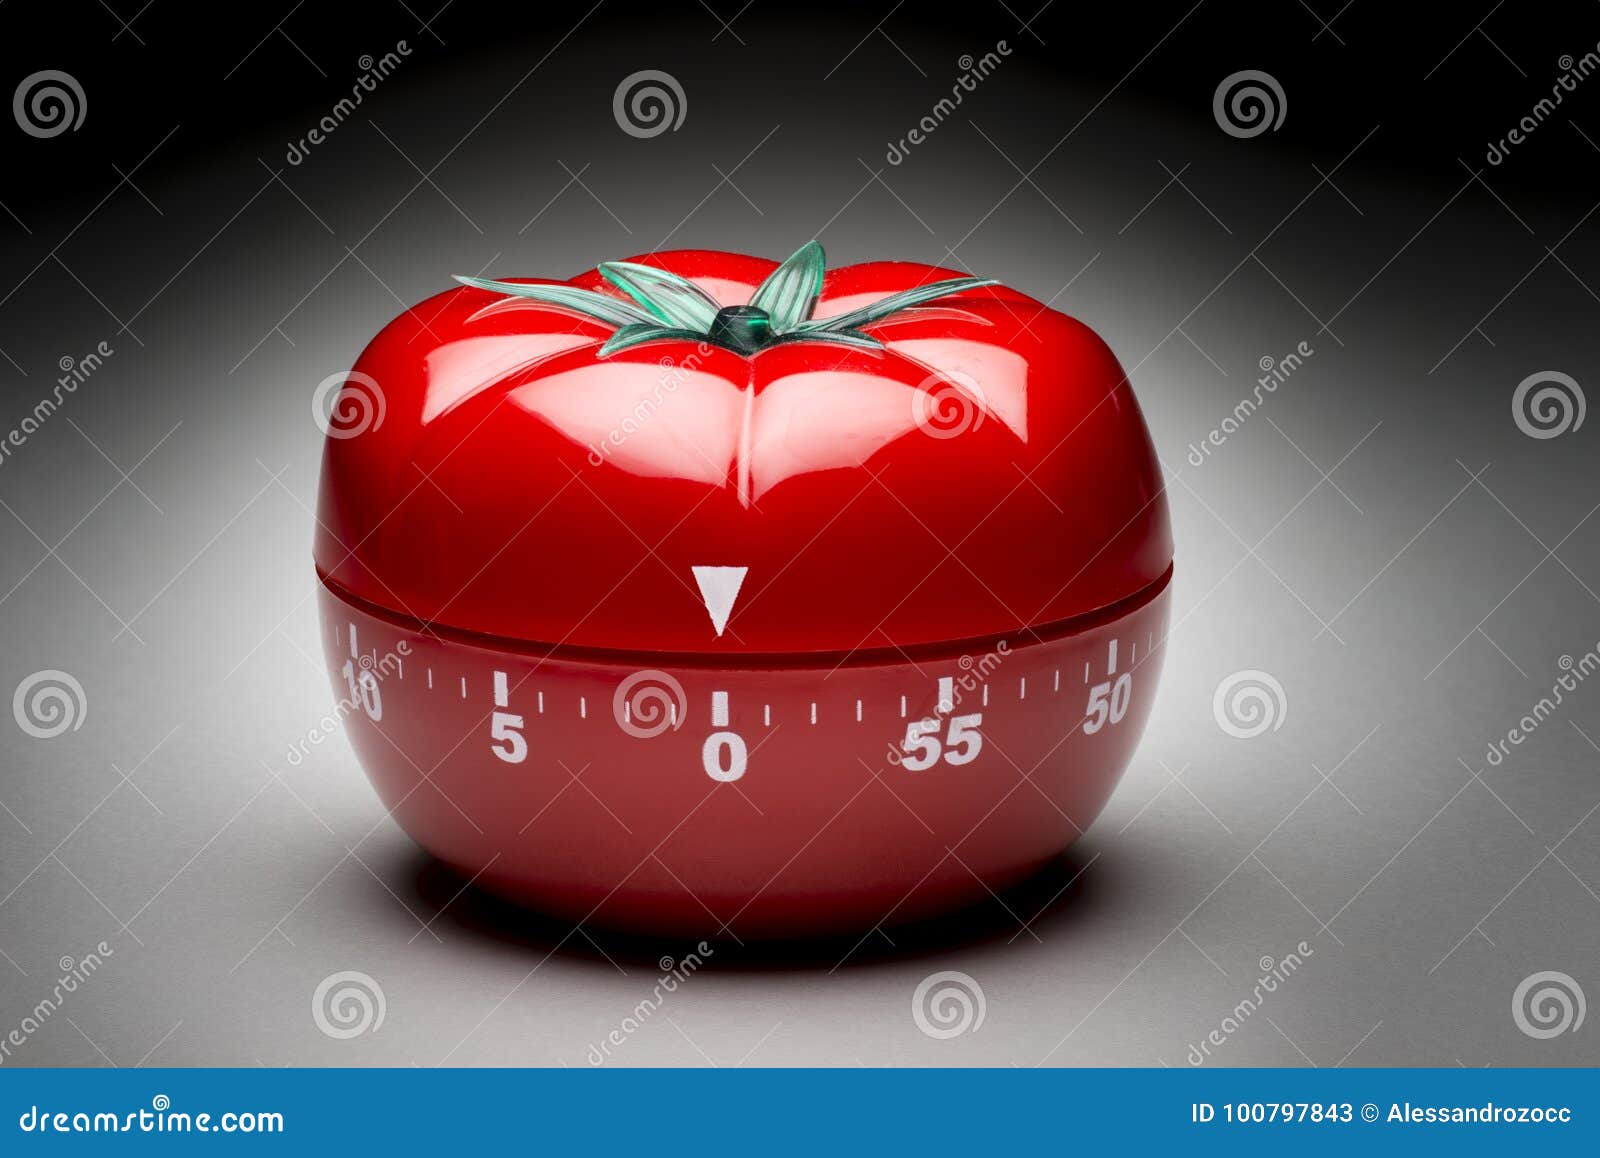 tomato timer chart